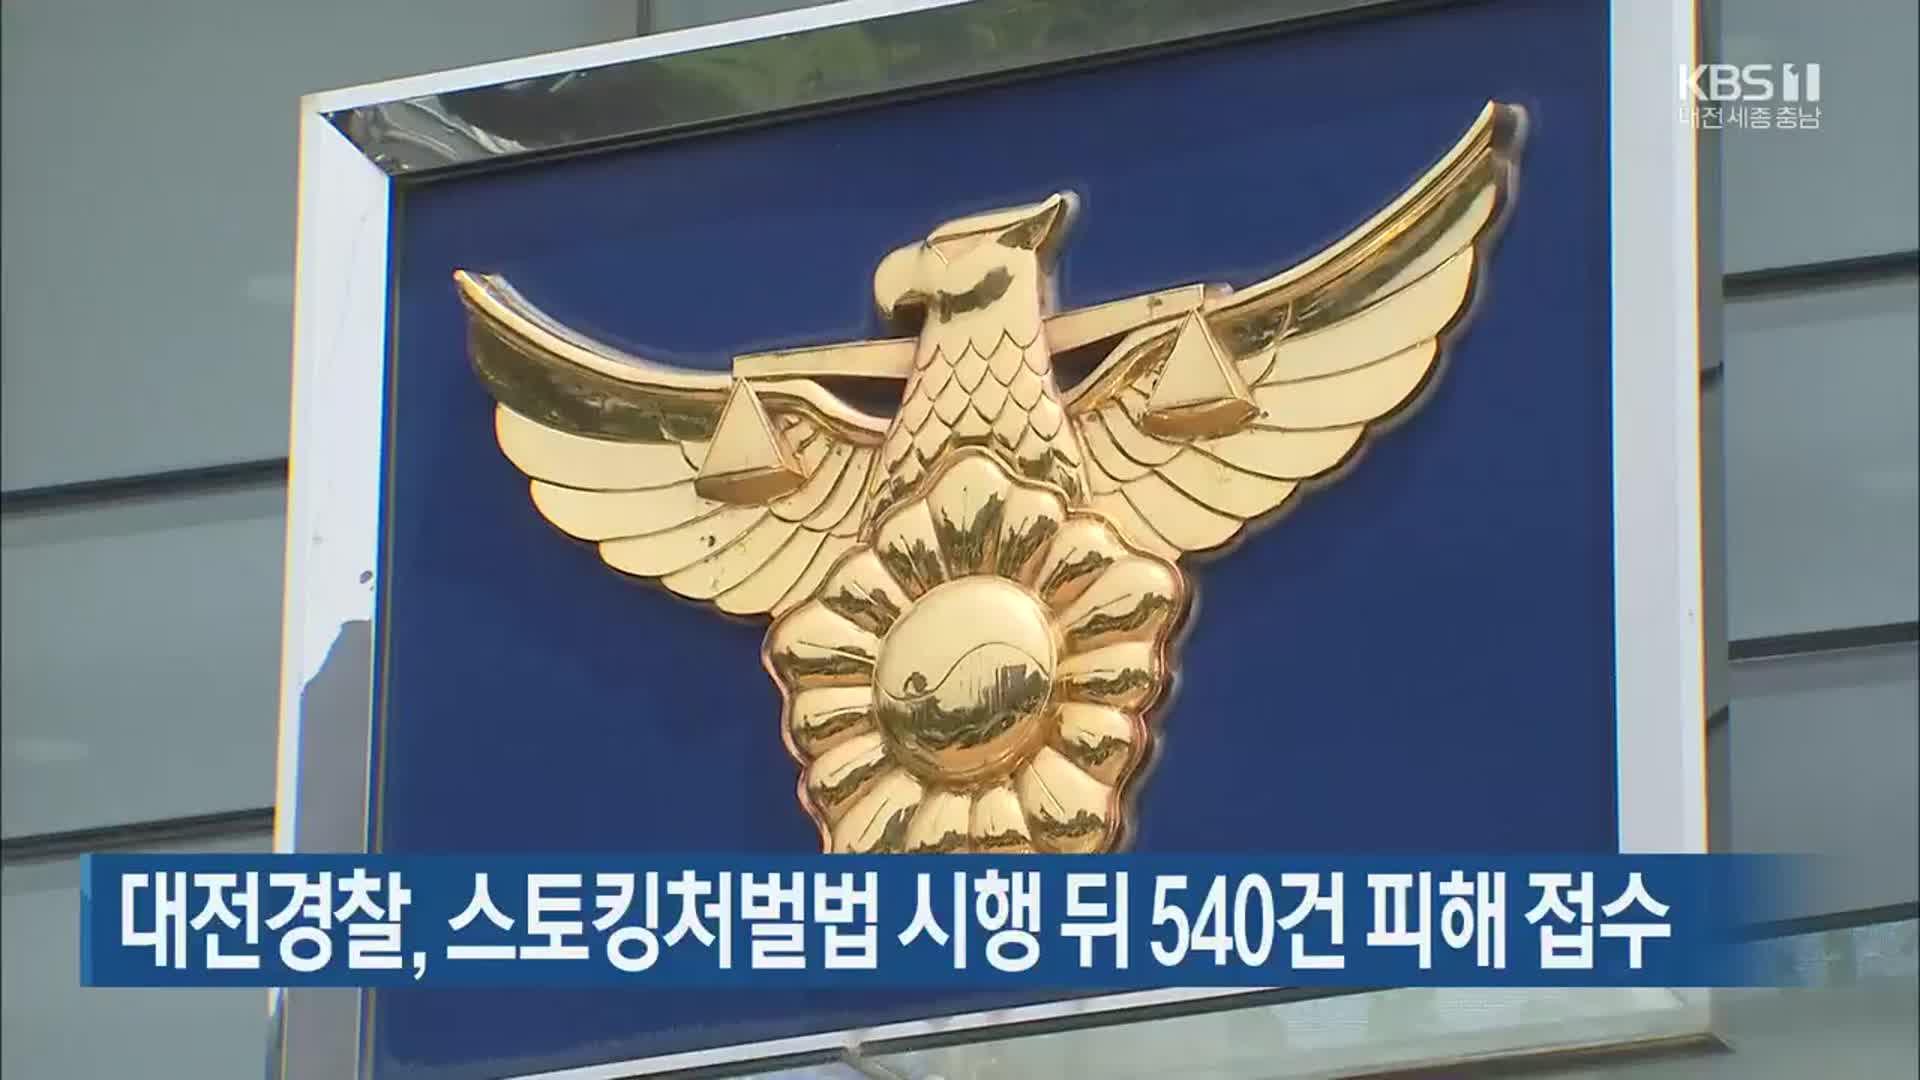 대전경찰, 스토킹처벌법 시행 뒤 540건 피해 접수